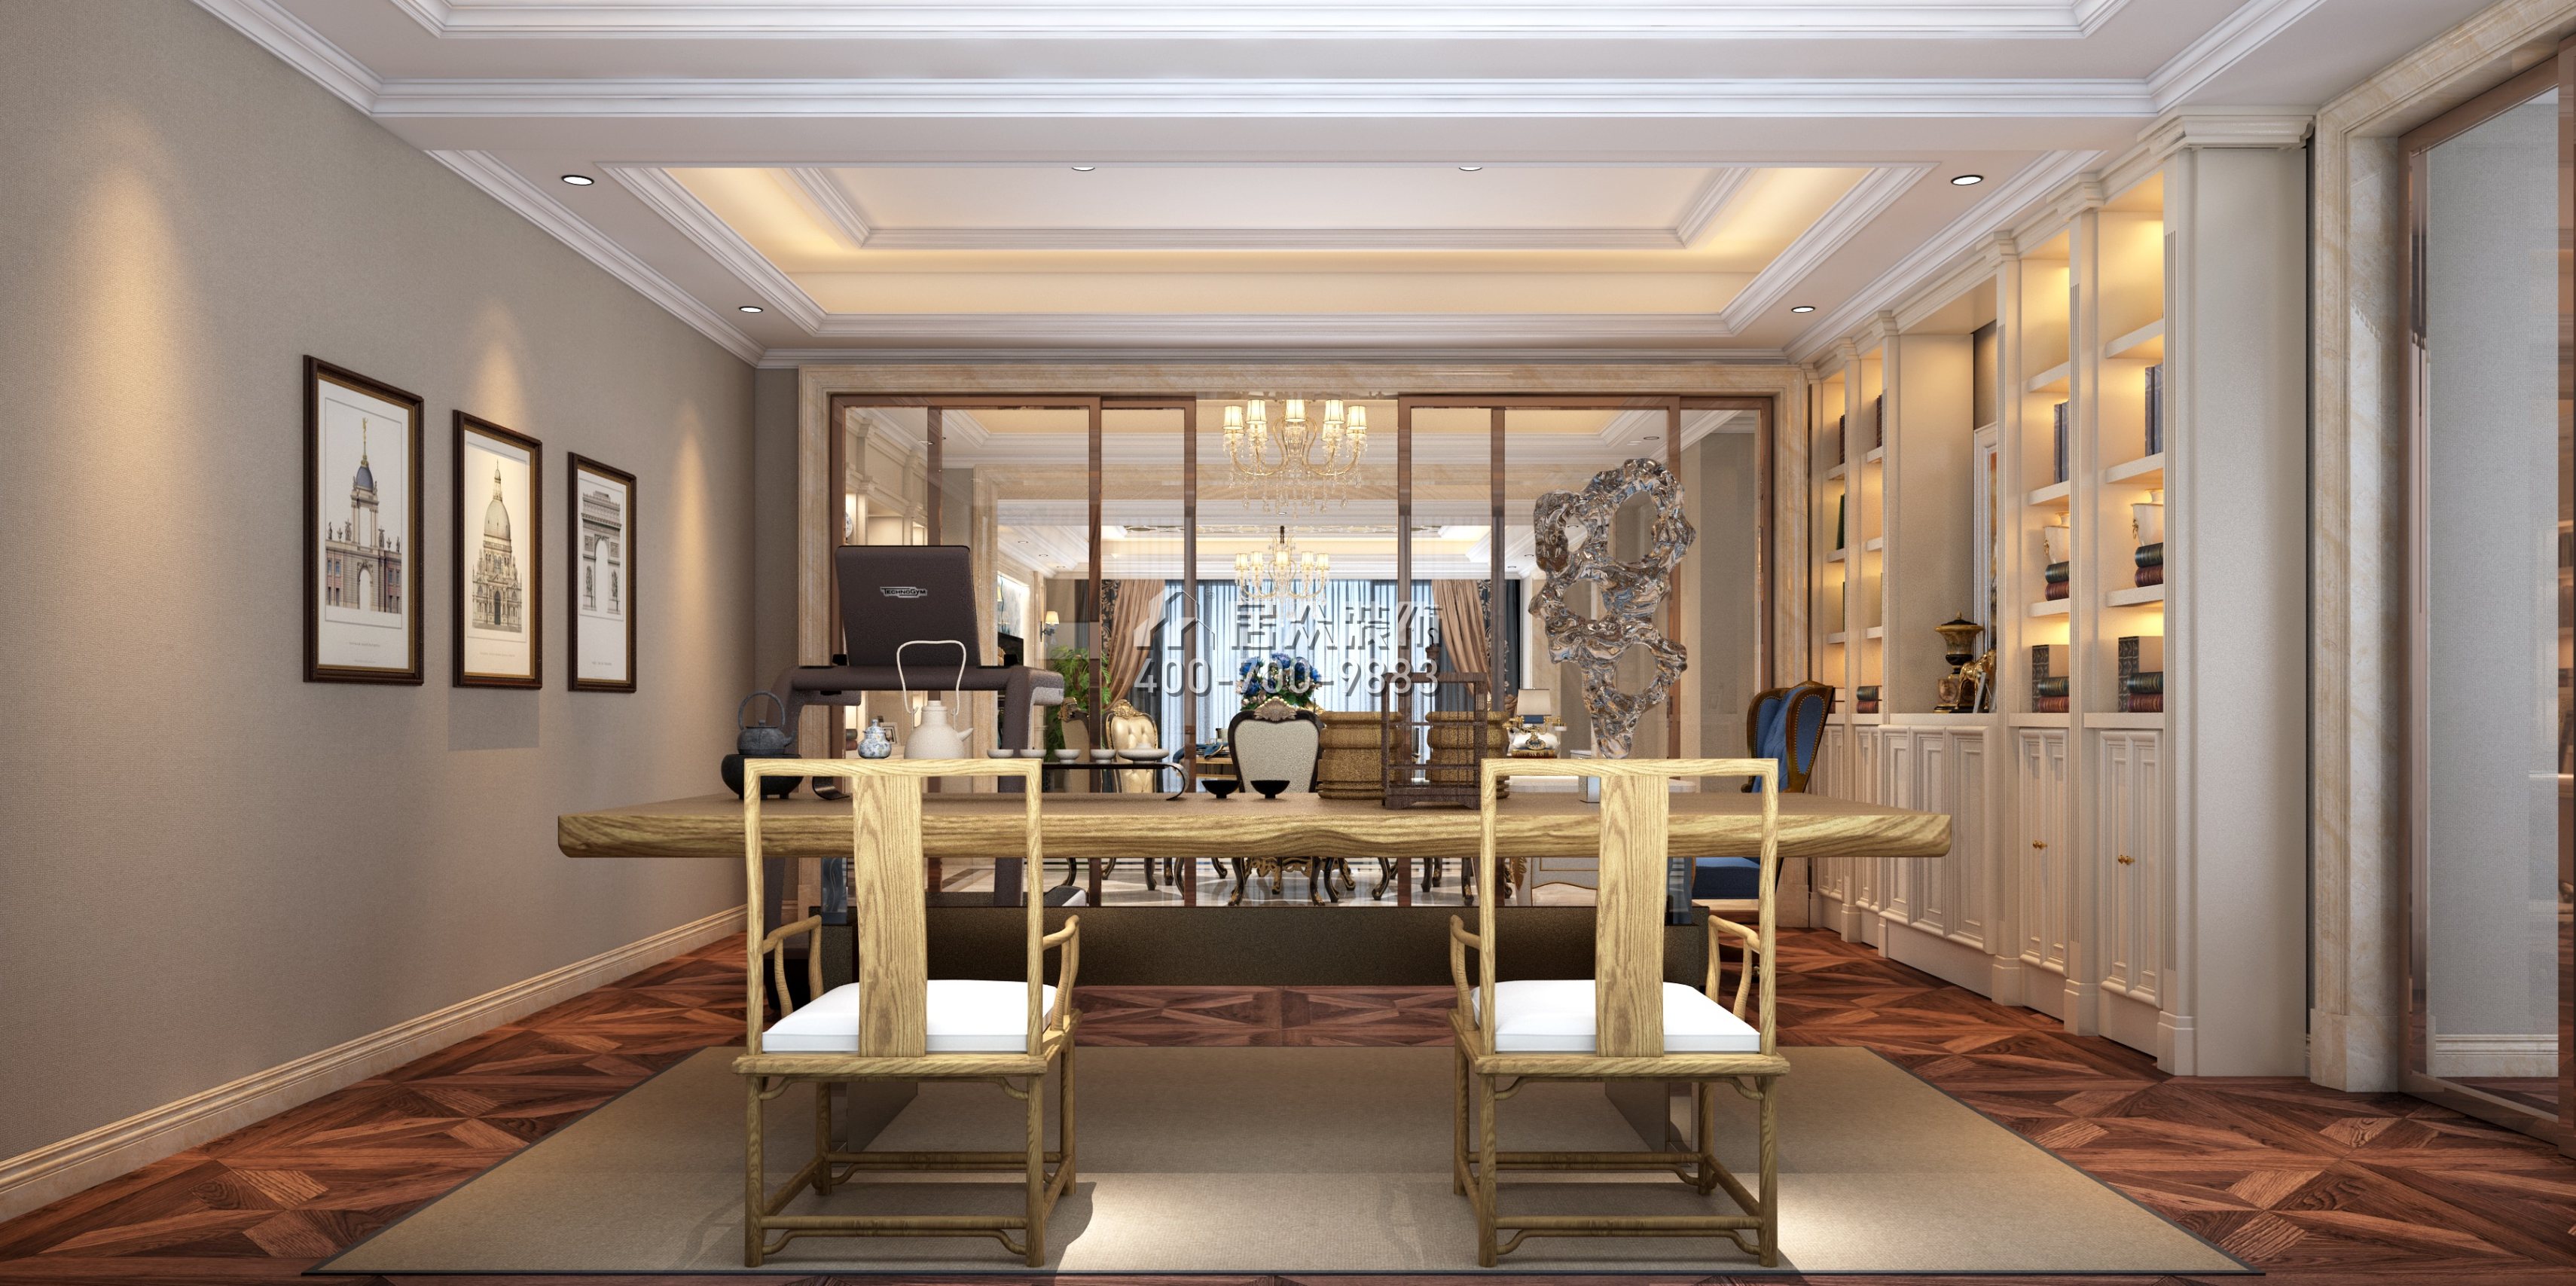 仁山智水花园一期300平方米美式风格平层户型茶室装修效果图